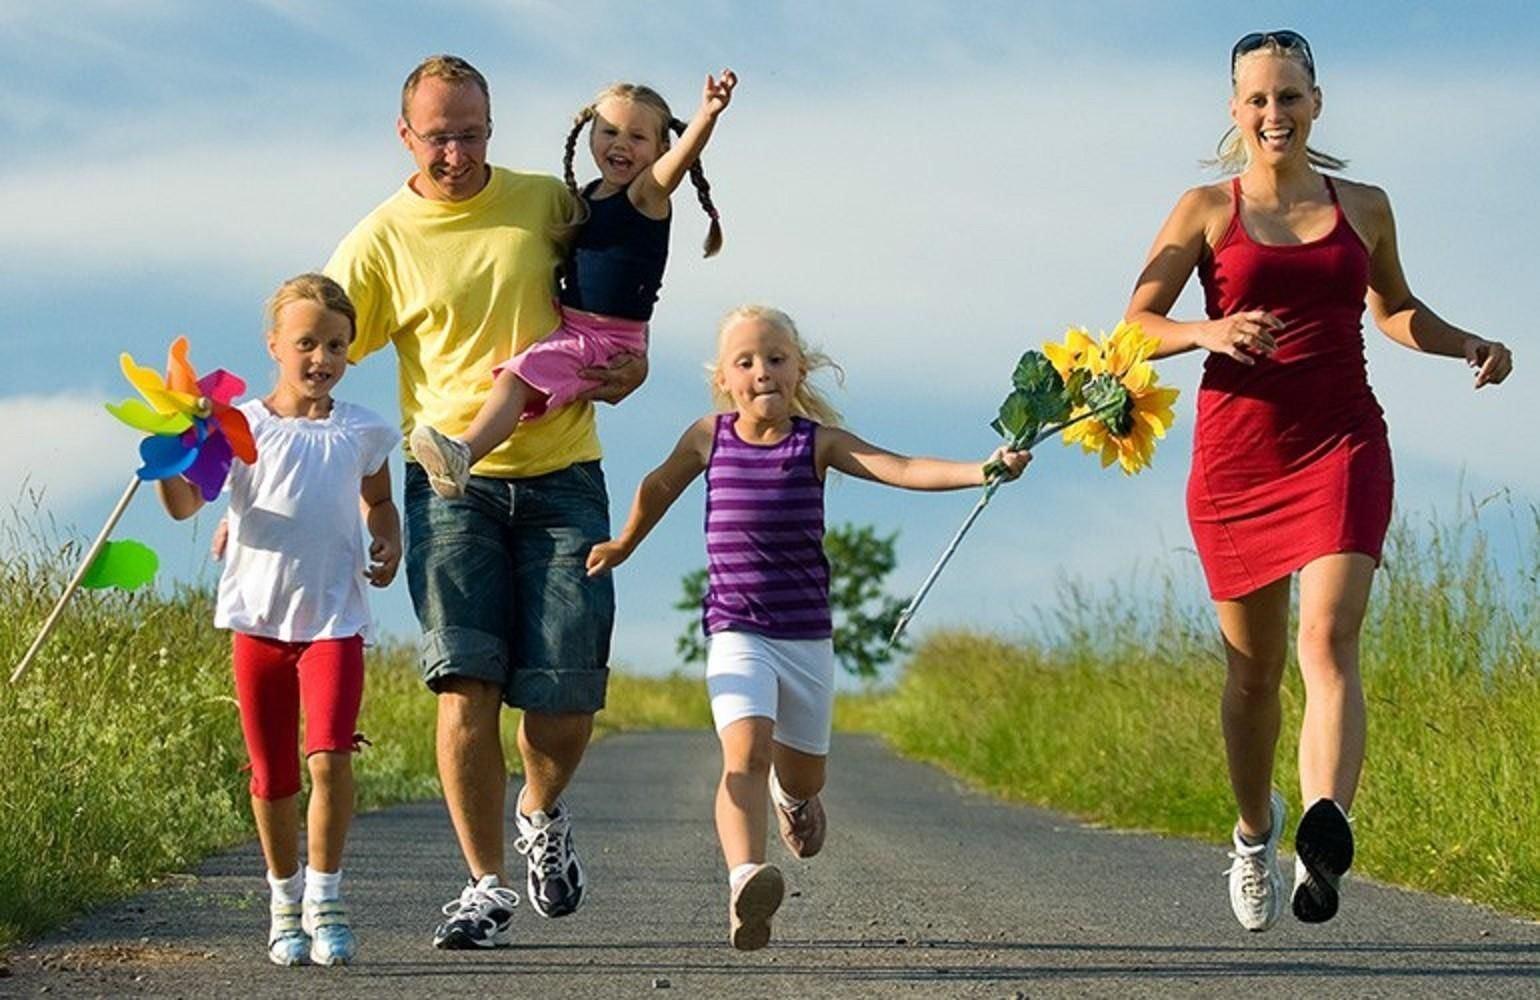 Примеры здоровых людей. Здоровый образ жизни. Спортивная семья. Активный и здоровый образ жизни. Спортивная семья с детьми.